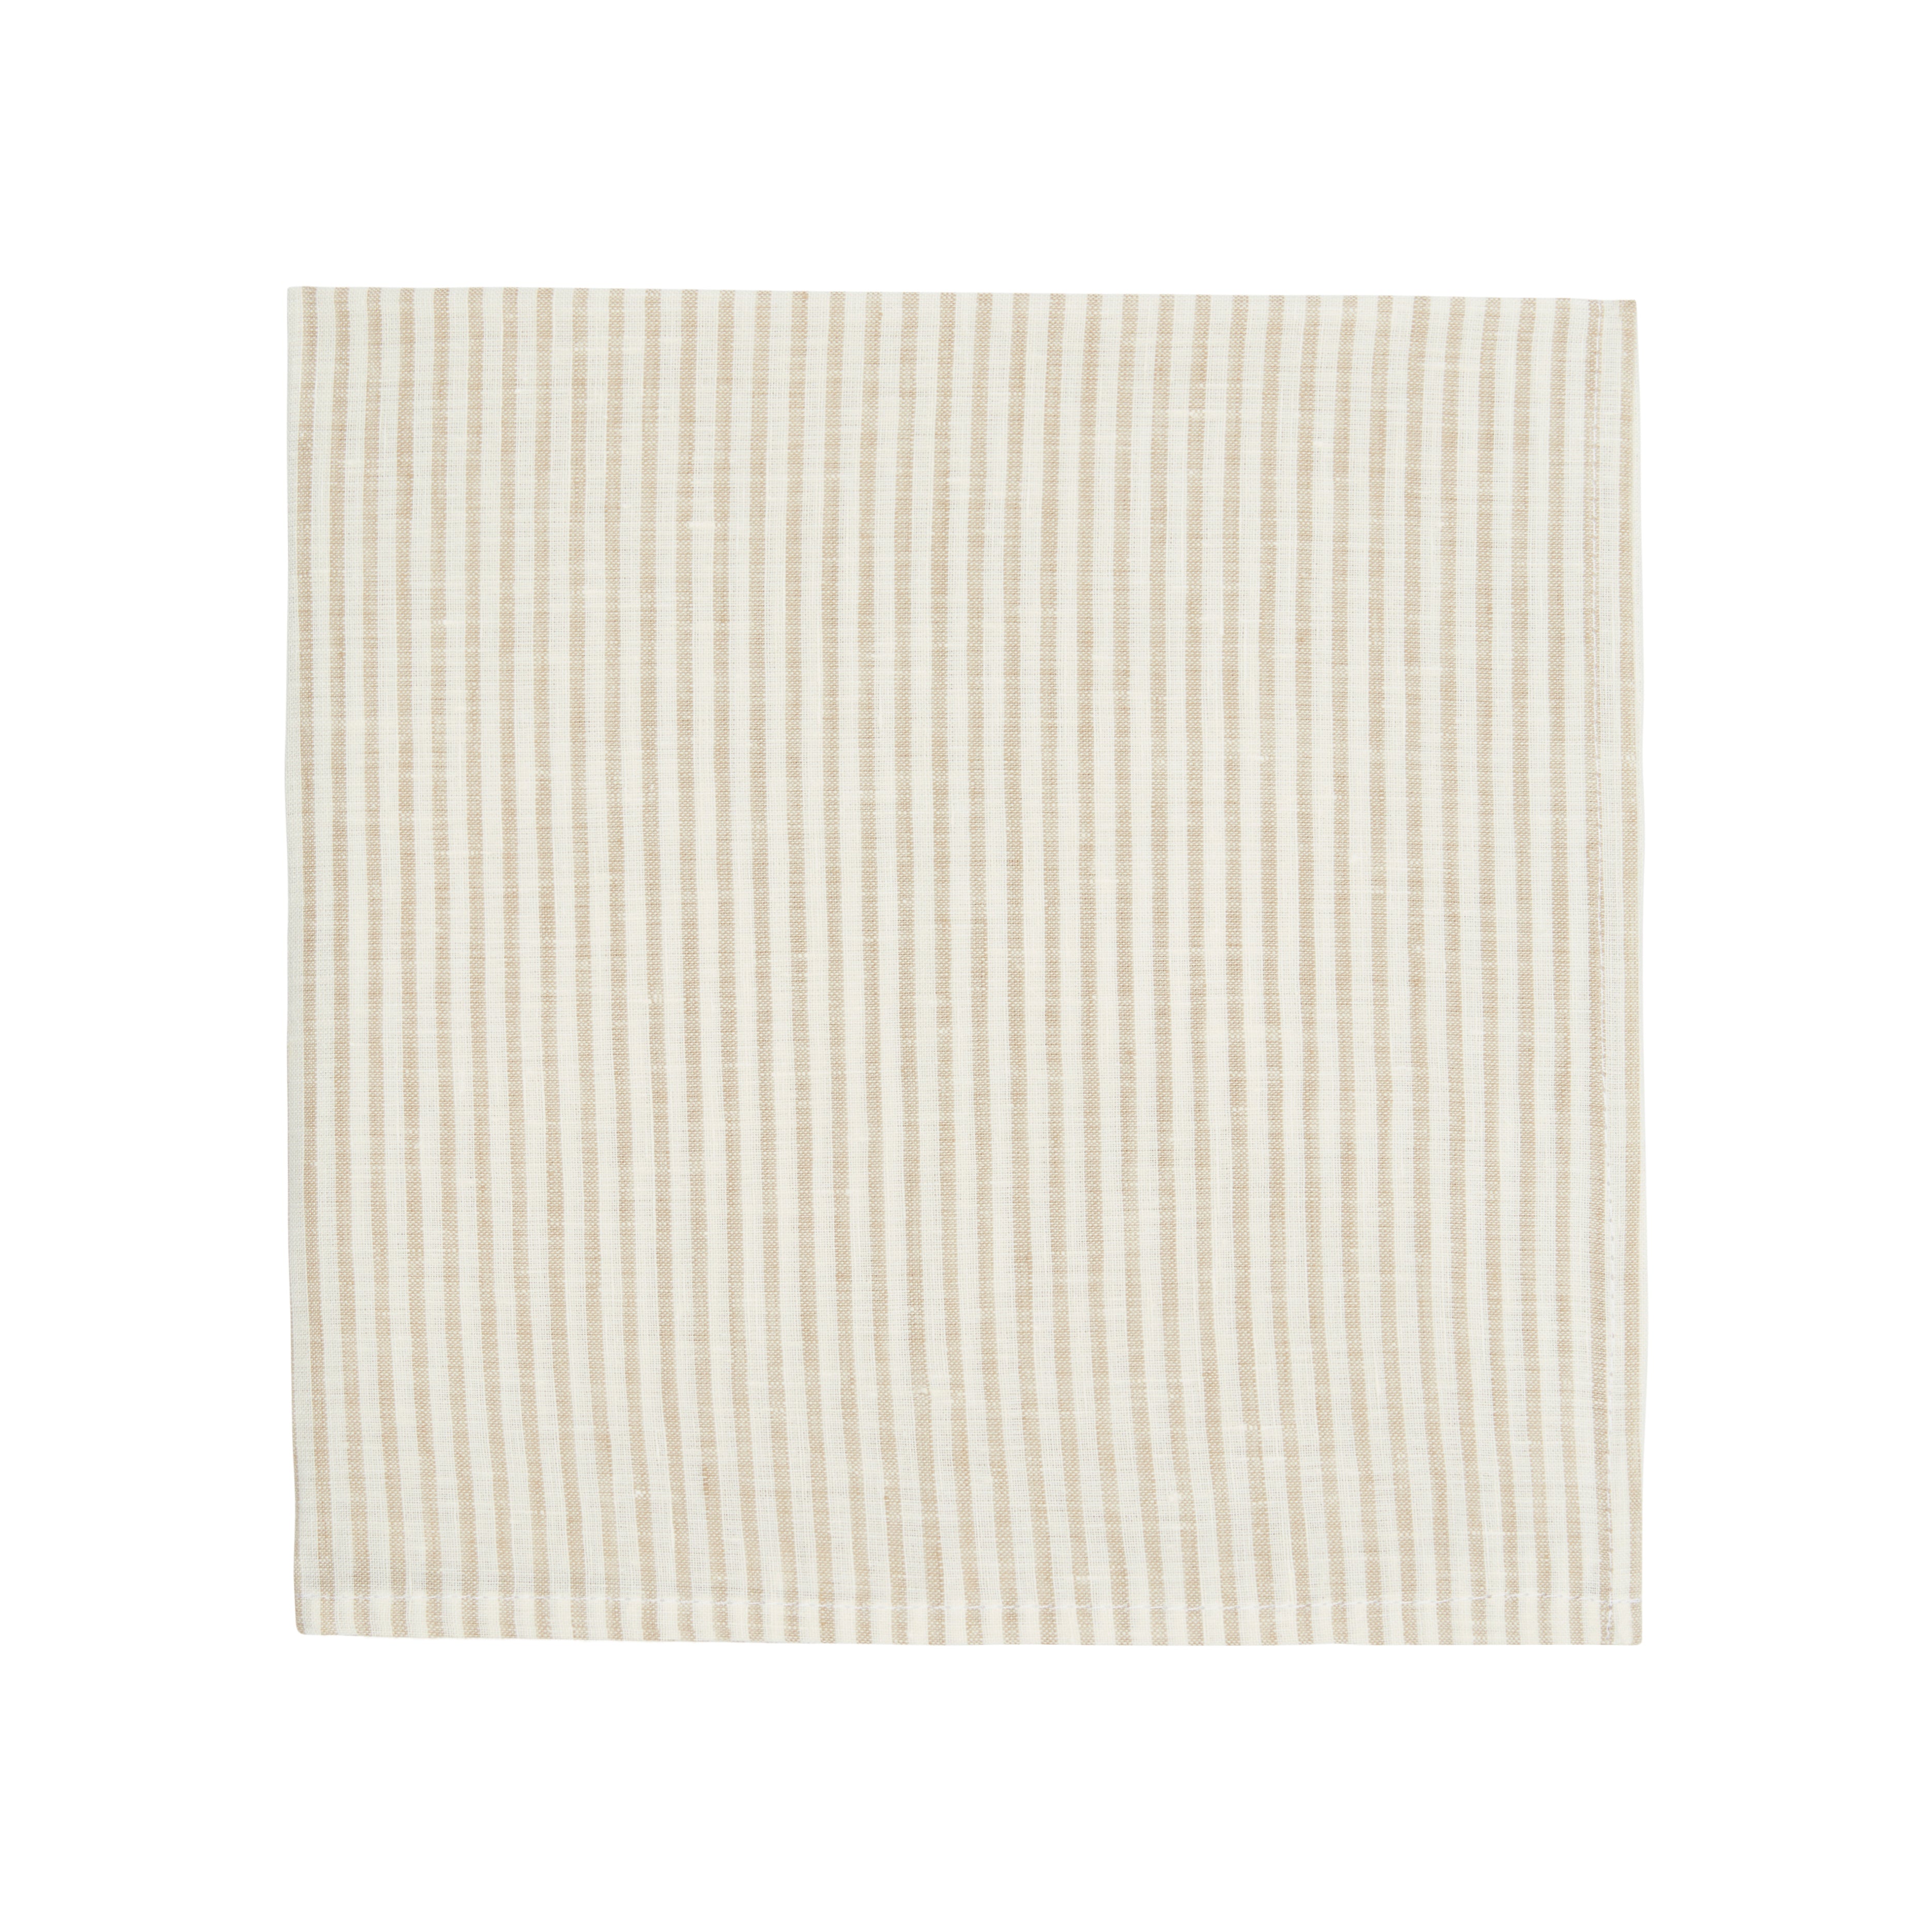 Napkin Stripe 54cm x 54cm - Natural and White